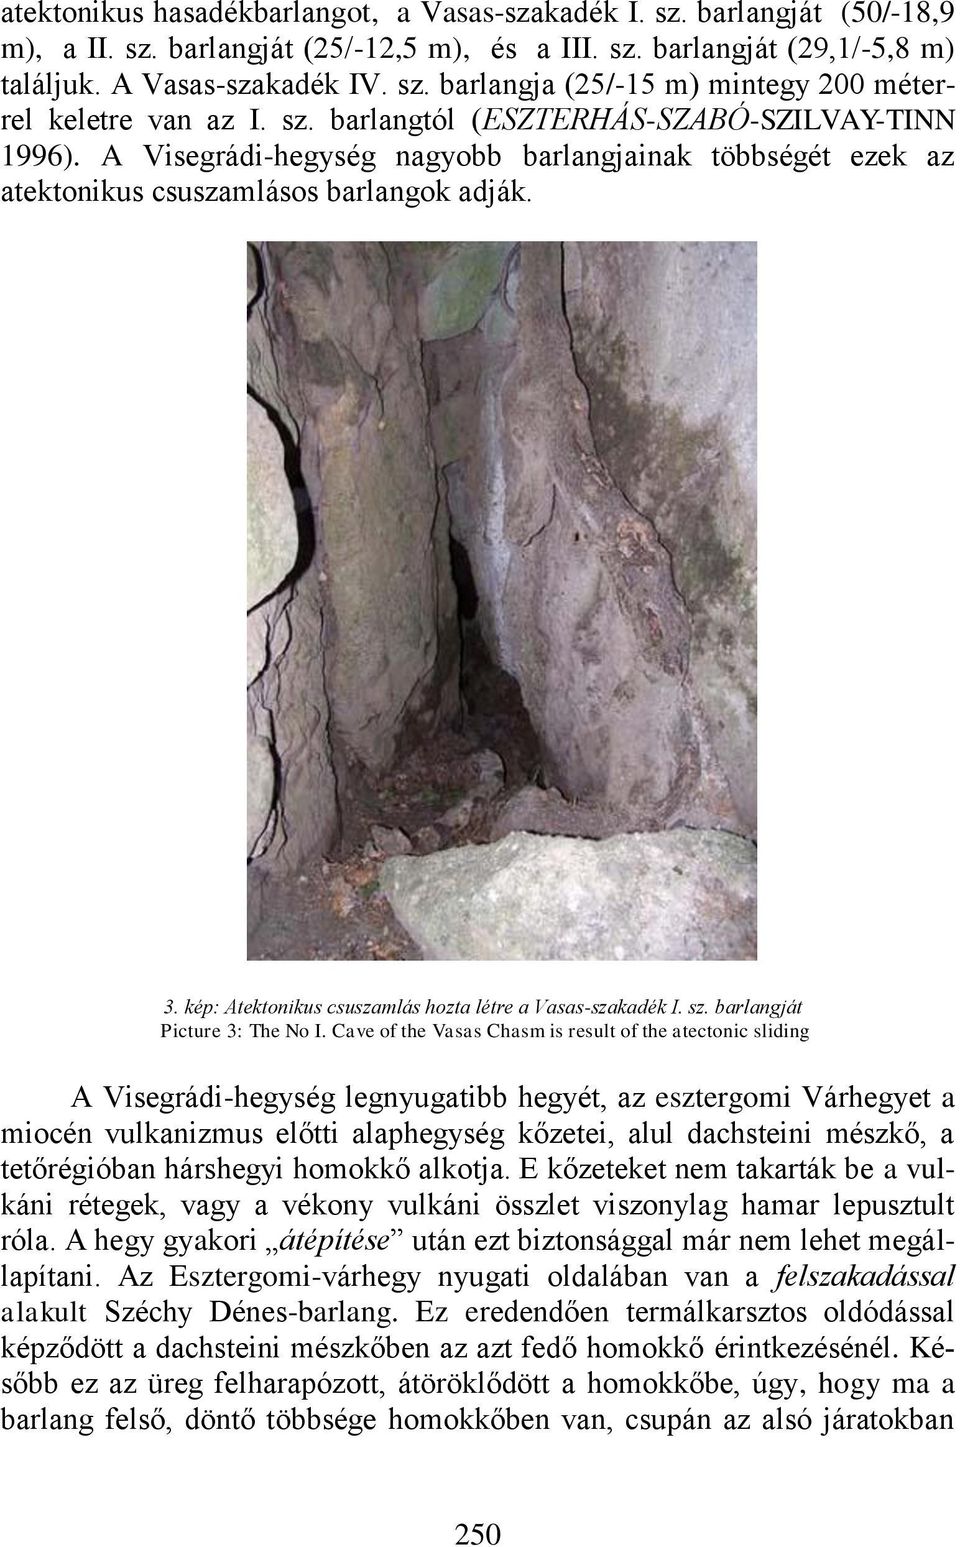 kép: Atektonikus csuszamlás hozta létre a Vasas-szakadék I. sz. barlangját Picture 3: The No I.